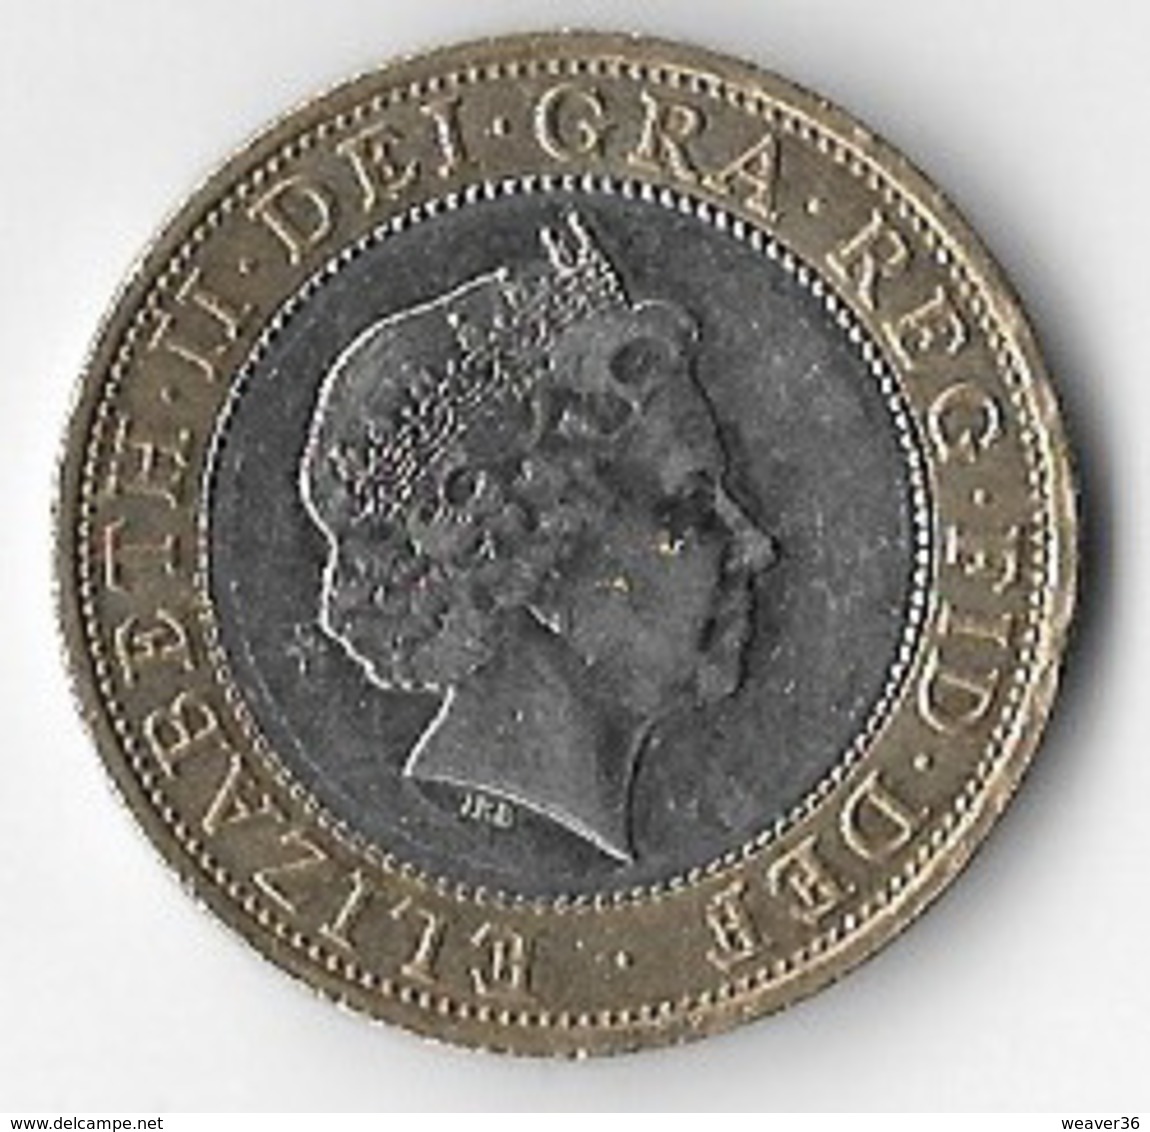 United Kingdom 2003 £2 DNA Double Helix Commemorative [C134/1D] - 2 Pounds